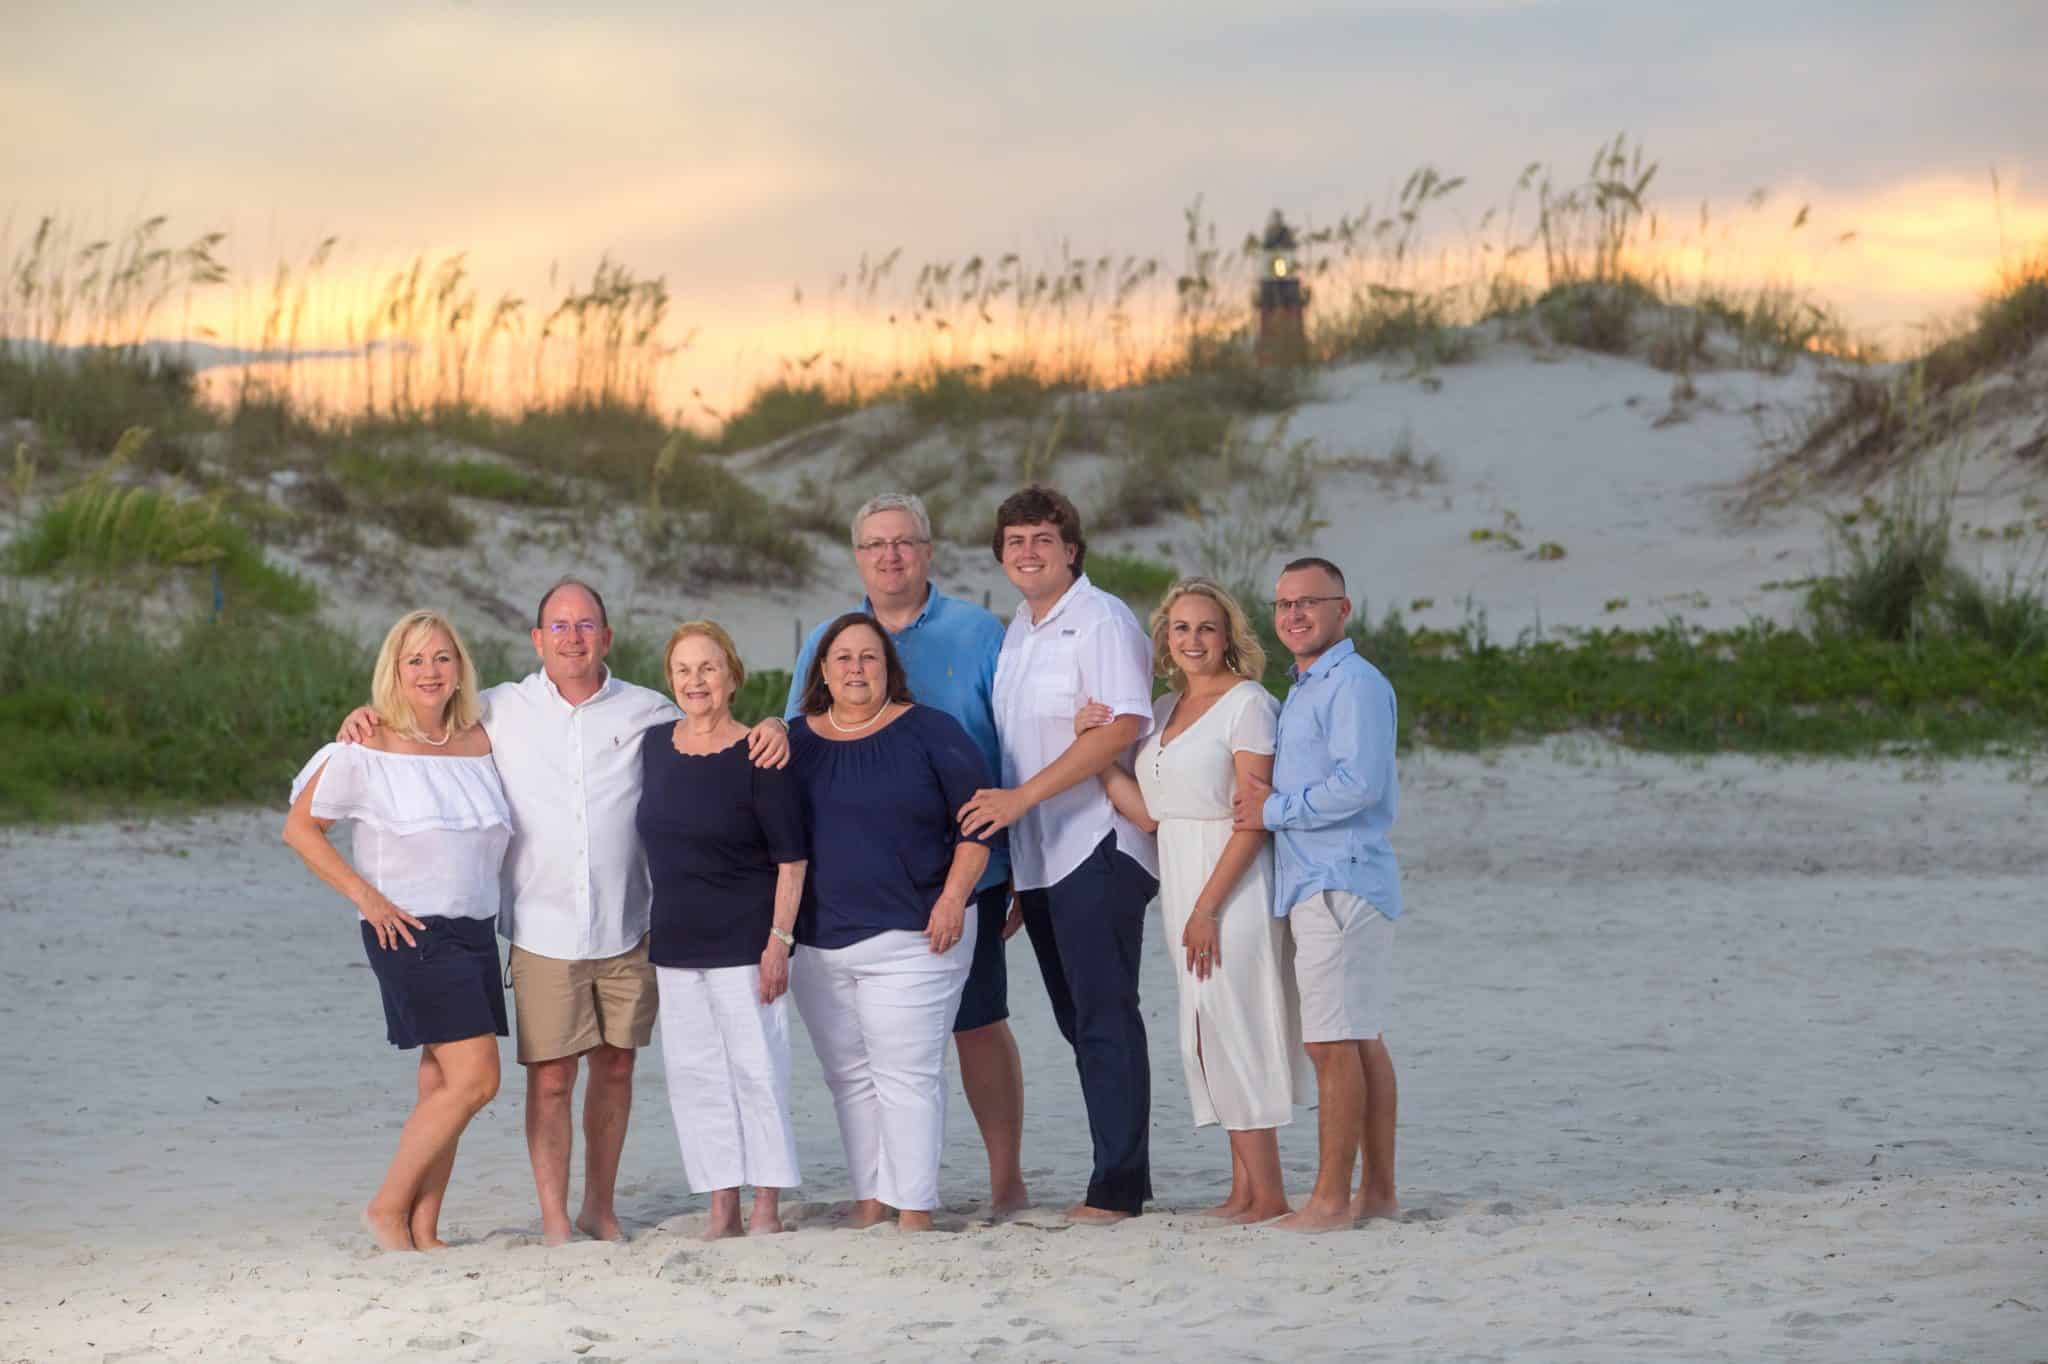 New Smyrna beach family photography portrait by lighthouse